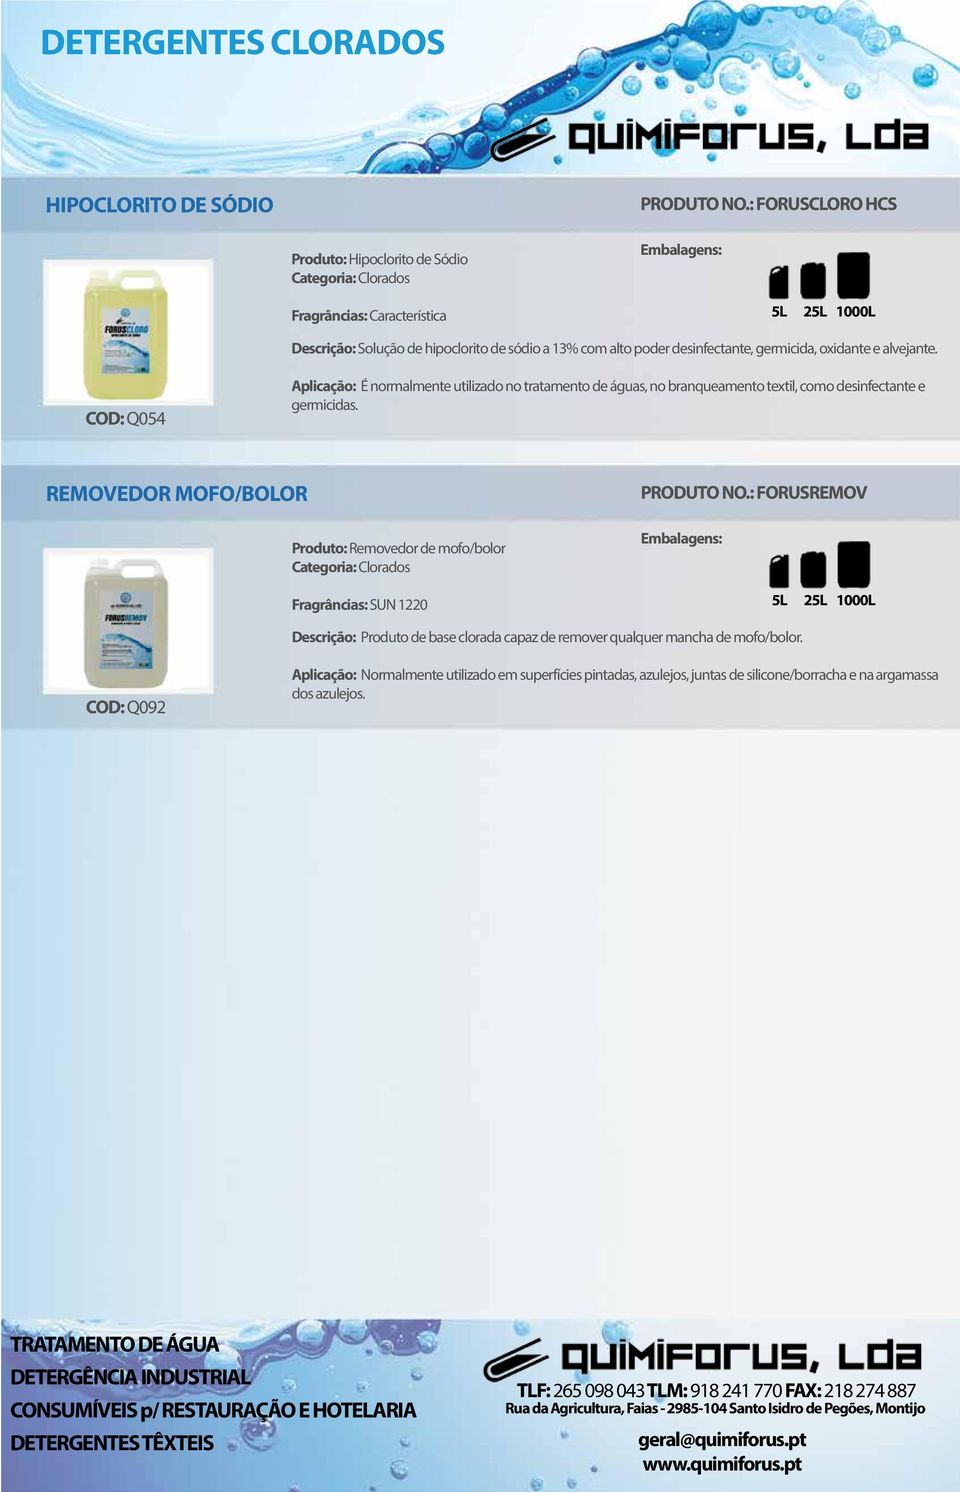 germicida, oxidante e alvejante. COD: Q054 Aplicação: É normalmente utilizado no tratamento de águas, no branqueamento textil, como desinfectante e germicidas.